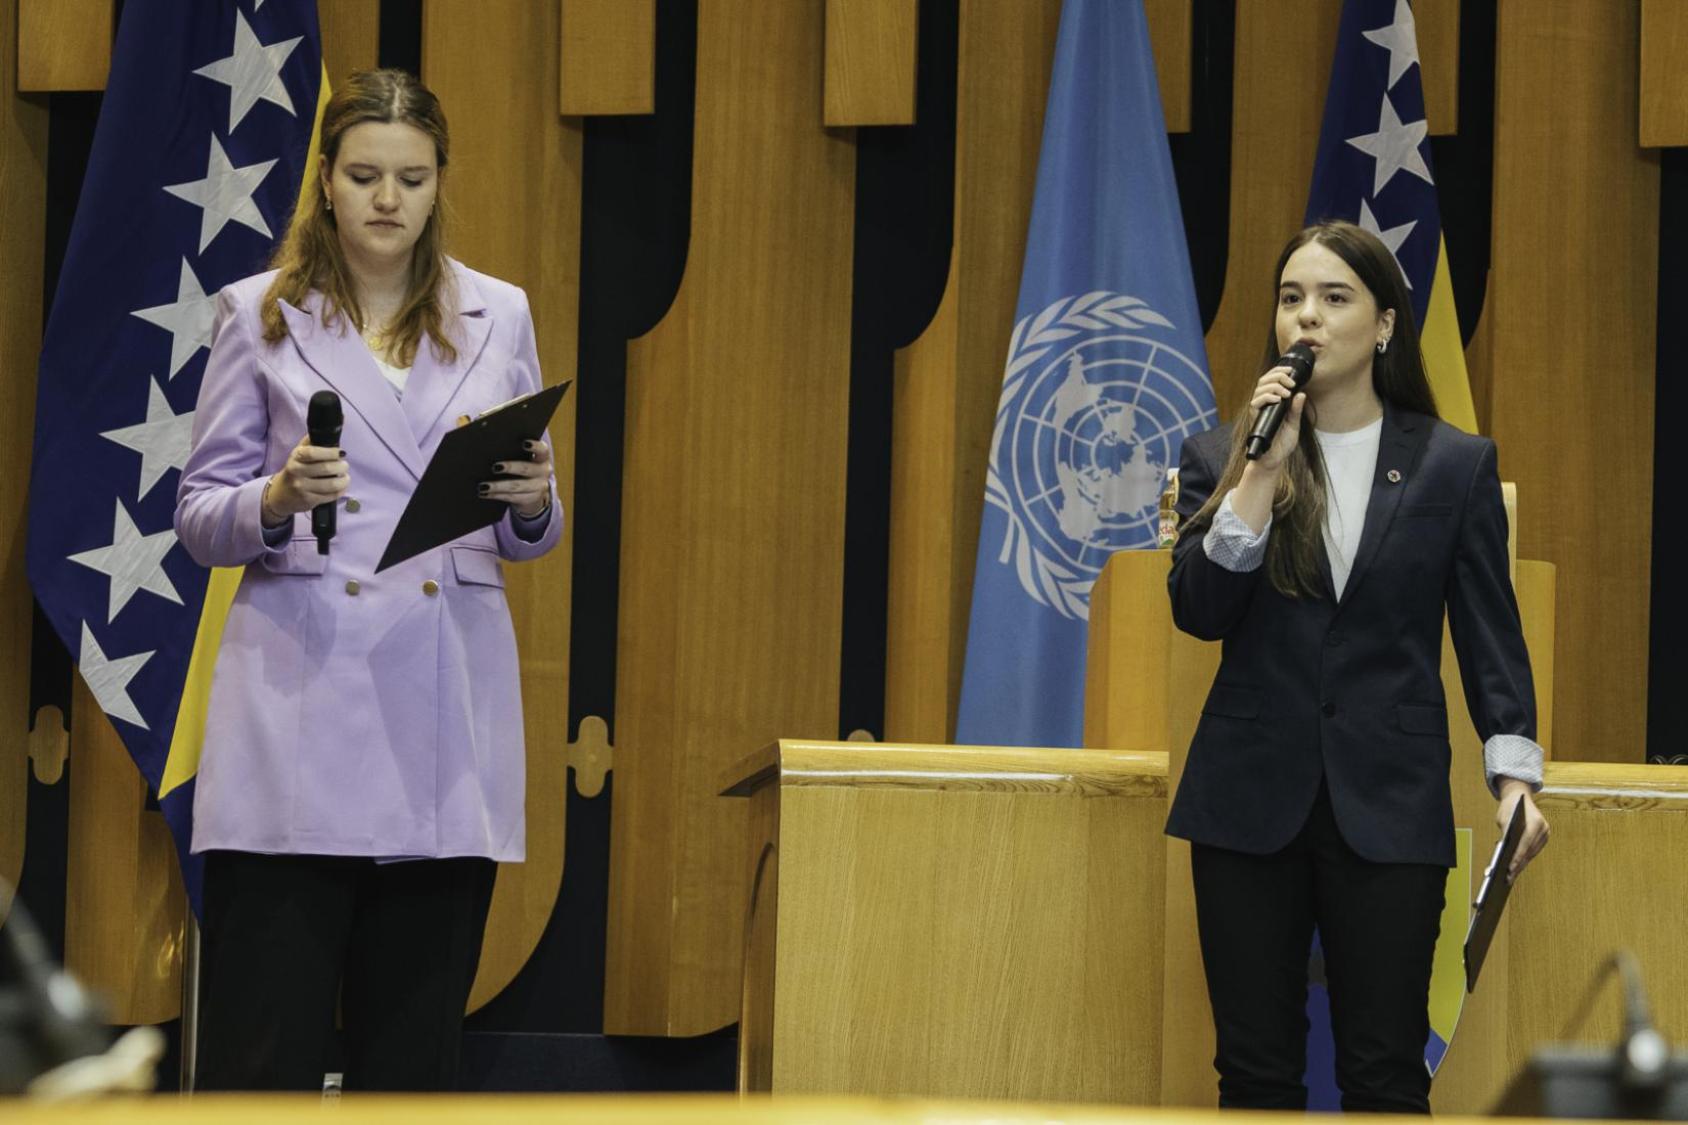 ممثلثا الشباب من البوسنة والهرسك في مؤتمر الأمم المتحدة المعني بتغير المناخ الذي انعقد العام الماضي في غلاسكو, أناستاسيا جوركا بوسانتشيتش وأرميلا مهدين، تتحدثان في الاحتفال.